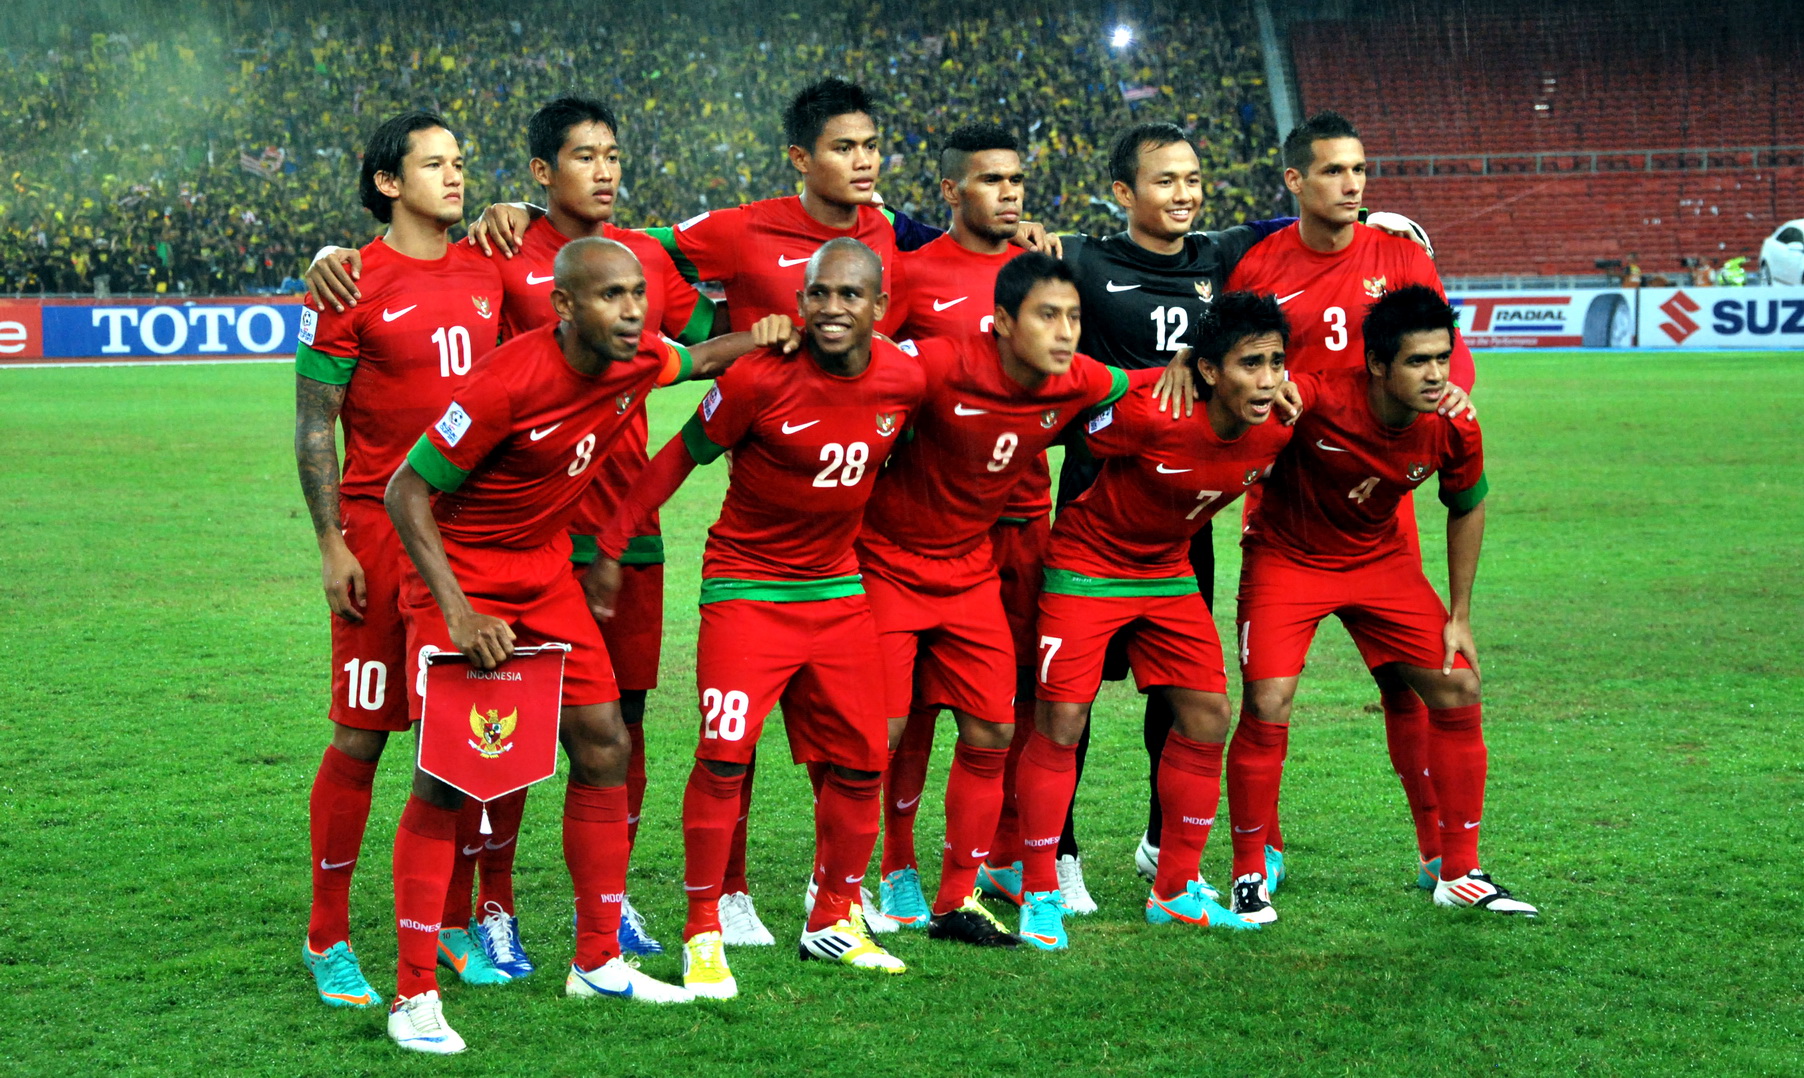 Momen Momen Terbaik Terburuk Sepakbola Indonesia 2012 Ranking